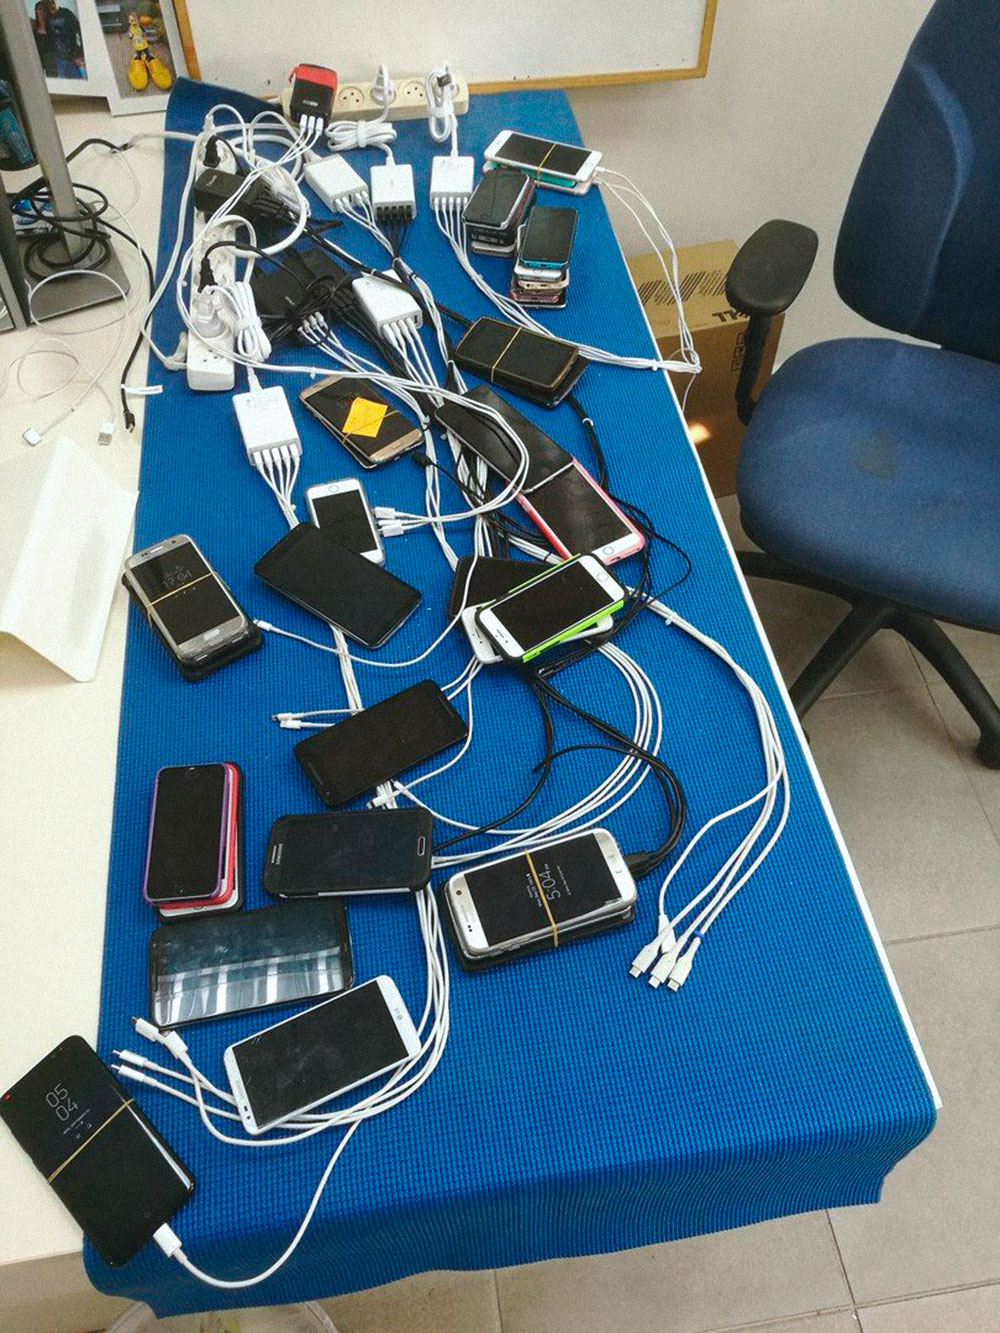 Я работаю тестировщиком мобильных приложений. Так выглядит мой рабочий стол